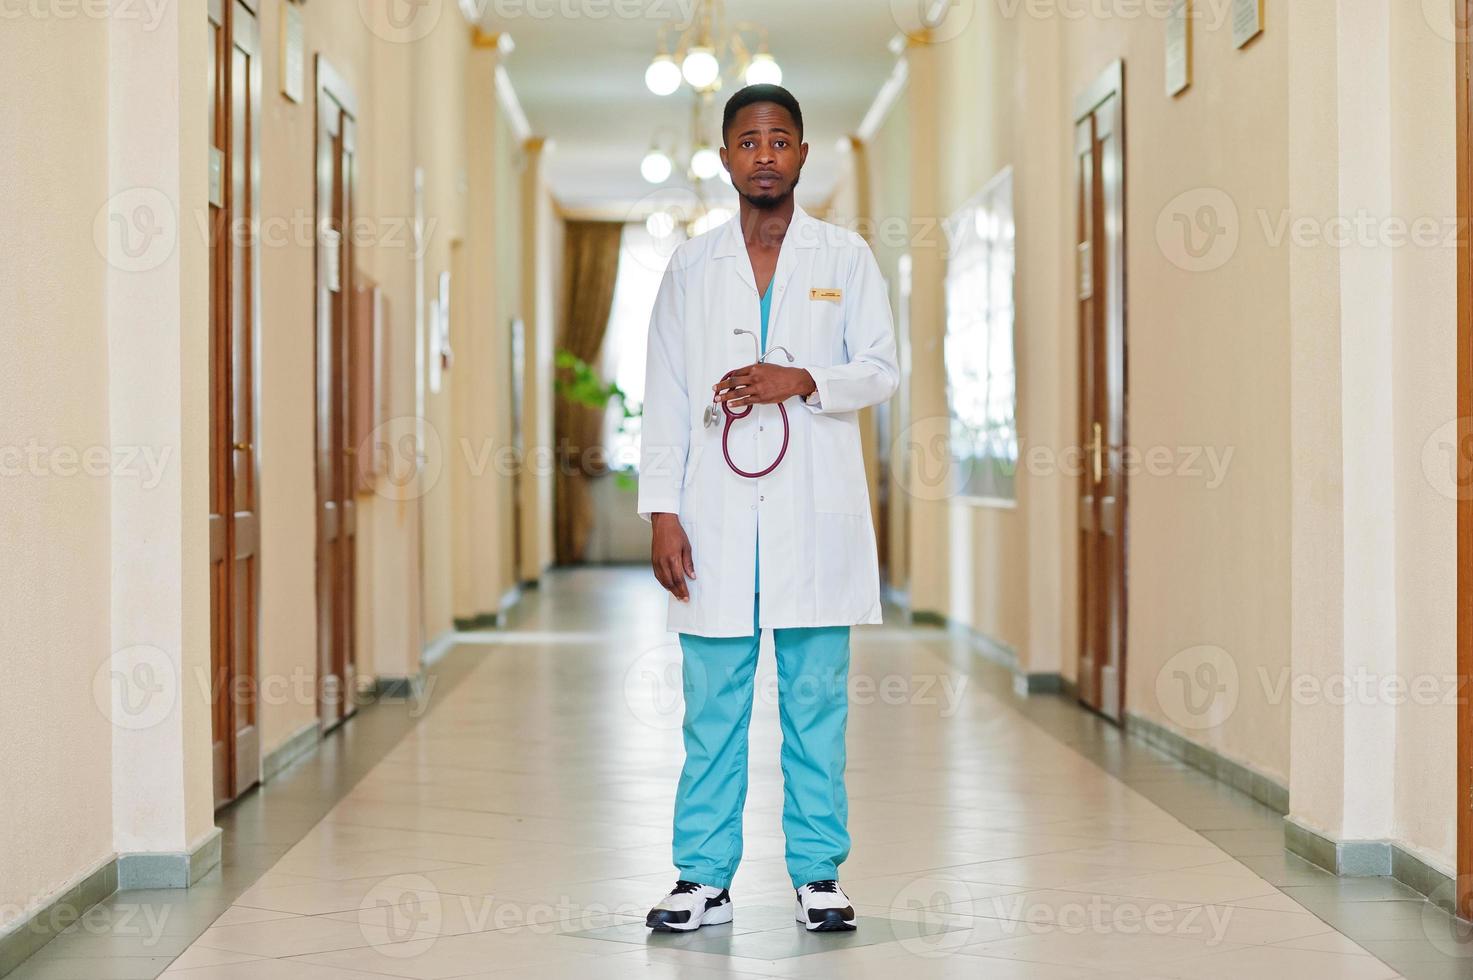 professionell afrikansk manlig läkare på sjukhuset. medicinsk hälsovårdsverksamhet och läkartjänst i afrika. foto